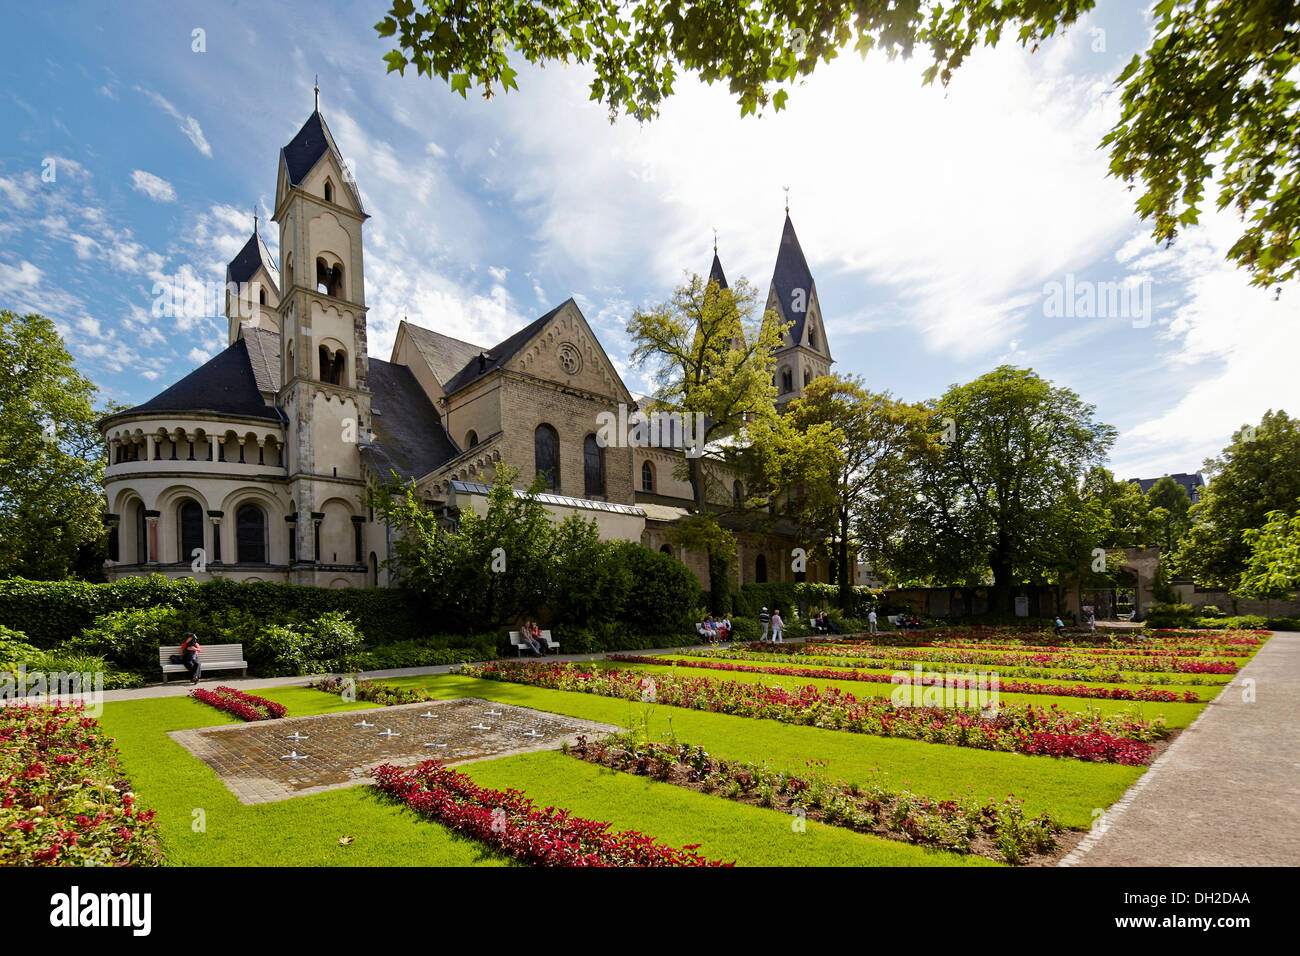 Basilica of St. Castor, Koblenz, Rhineland-Palatinate, Germany Stock Photo